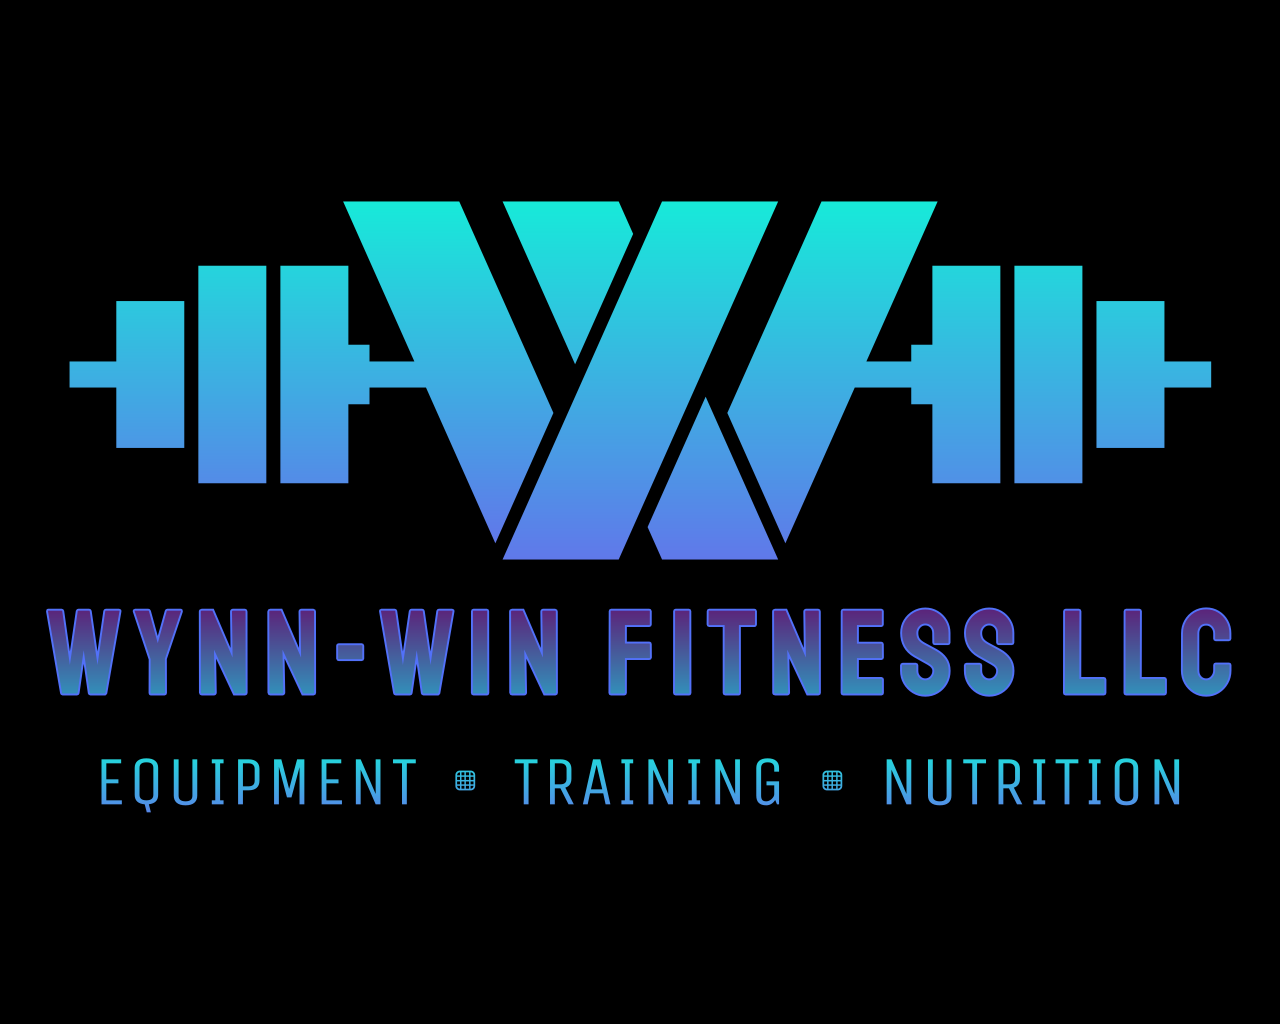 Wynn-Win Fitness LLC's web page